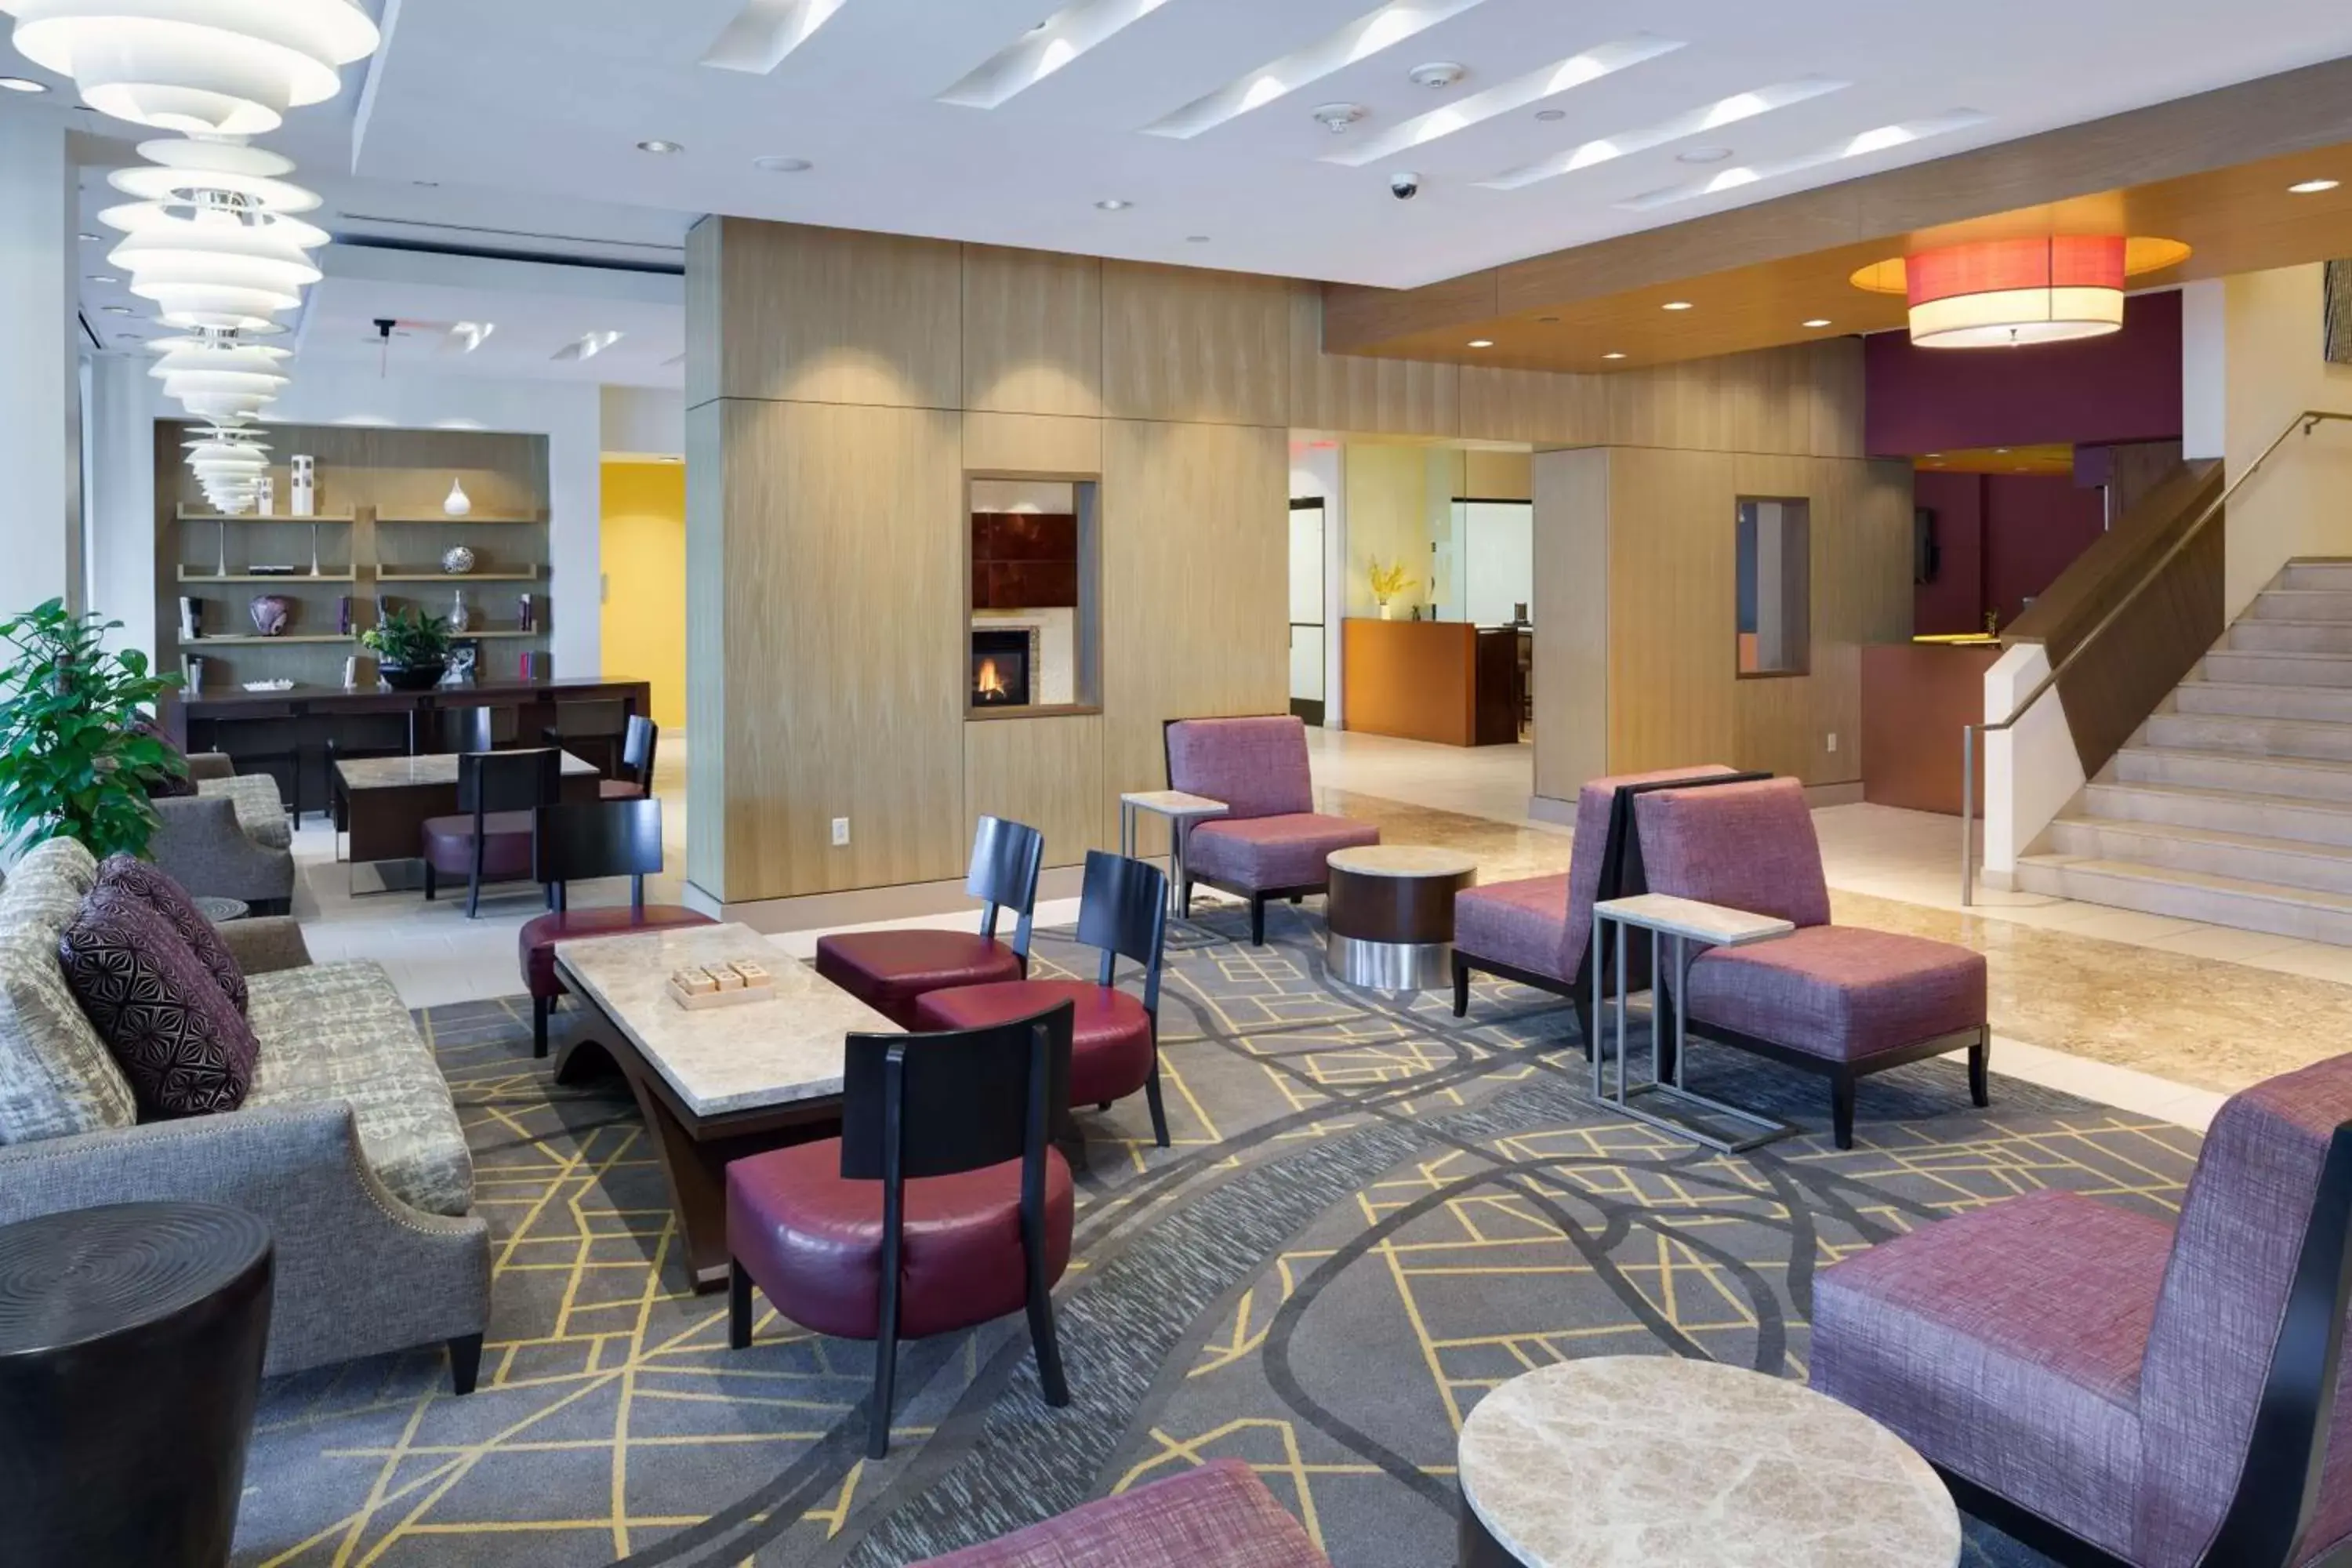 Lobby or reception in Hilton Hartford